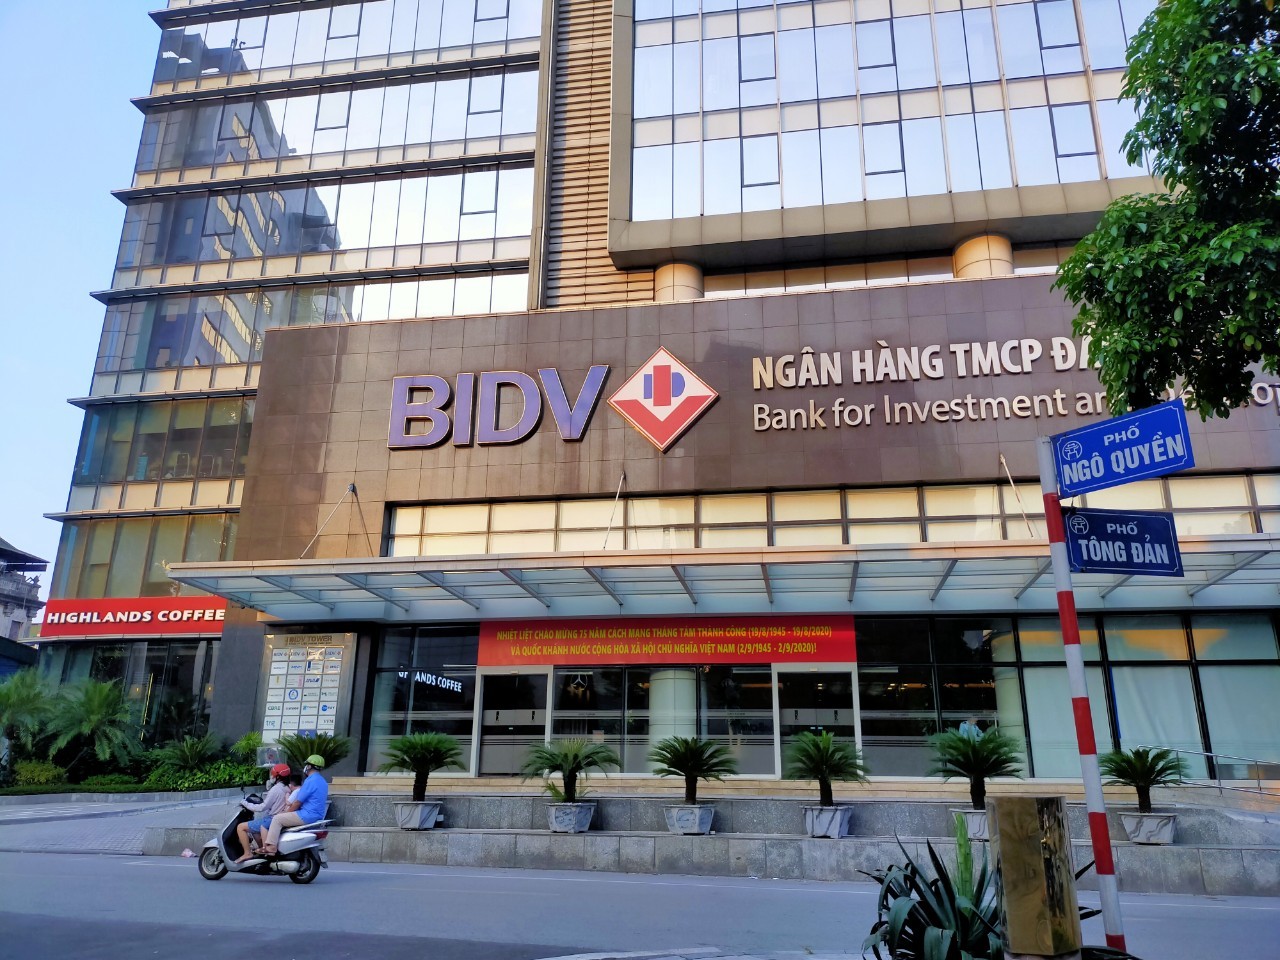 
Một chi nhánh của Ngân hàng BIDV
